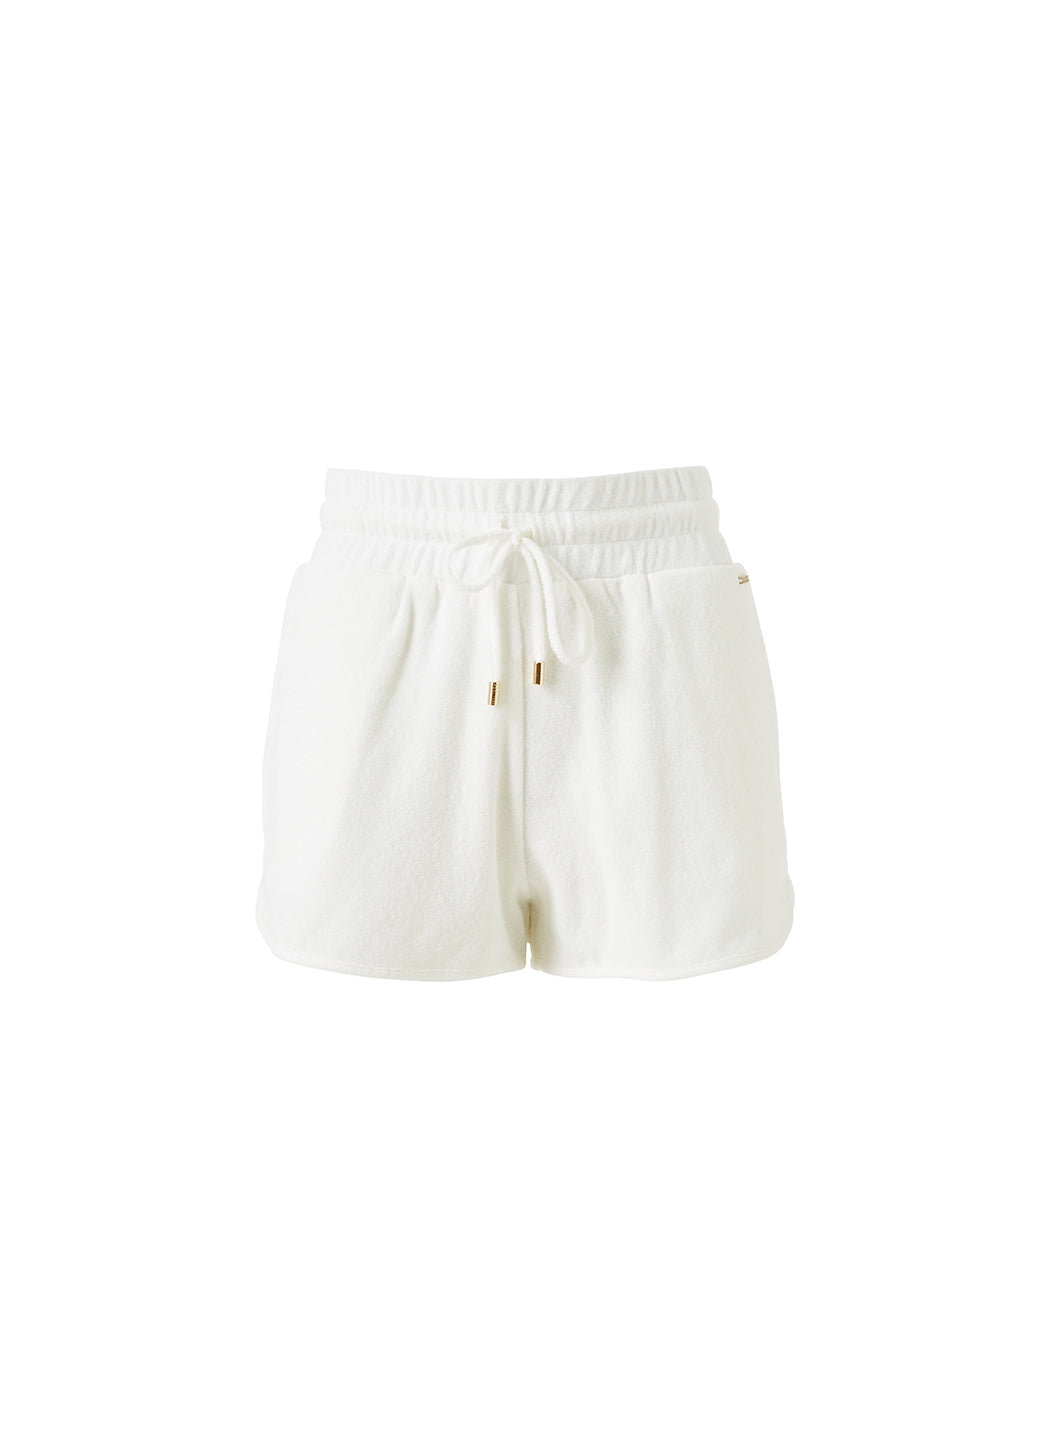 harley-white-shorts_cutouts